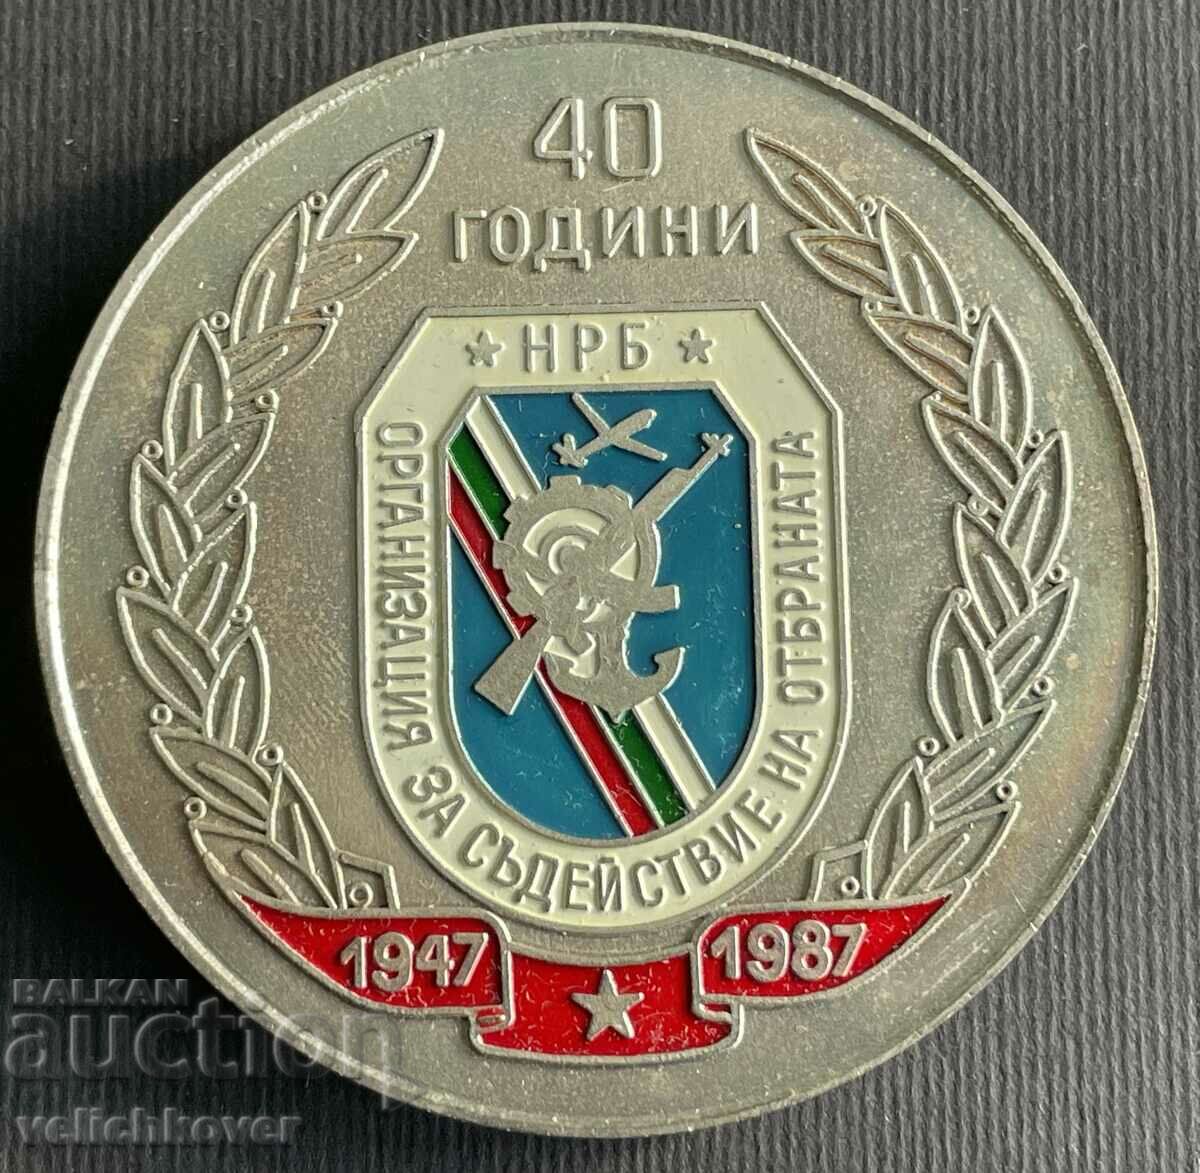 36981 Πλακέτα Βουλγαρίας 40 ετών. Οργανισμός Βοήθειας OSO